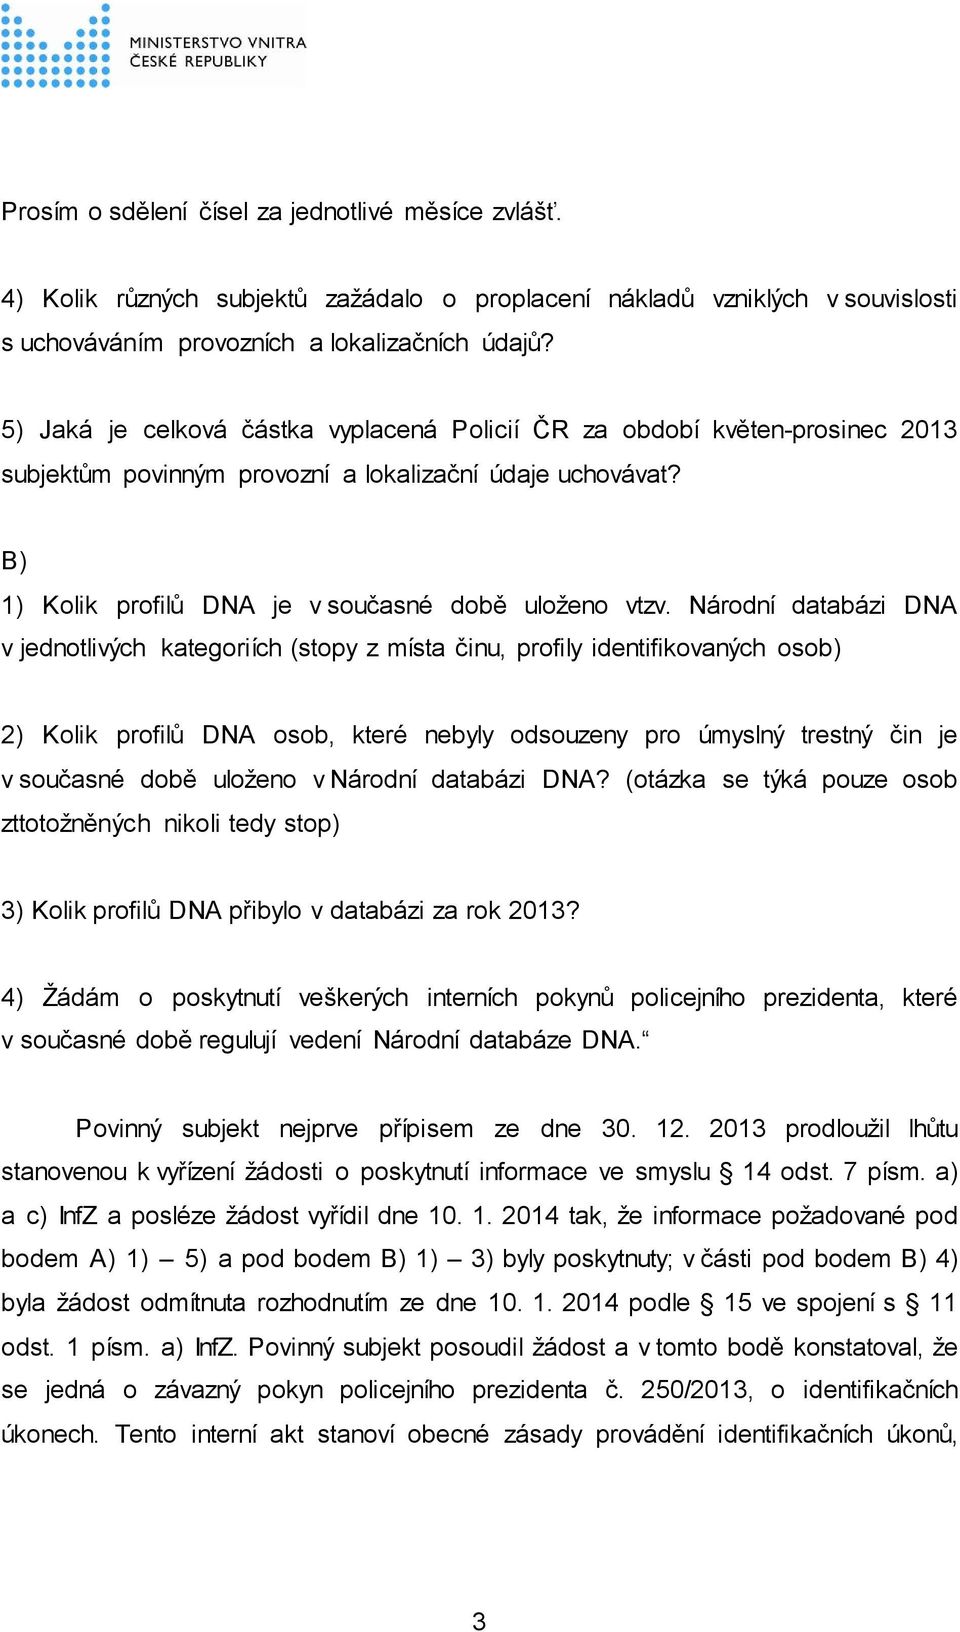 Národní databázi DNA v jednotlivých kategoriích (stopy z místa činu, profily identifikovaných osob) 2) Kolik profilů DNA osob, které nebyly odsouzeny pro úmyslný trestný čin je v současné době